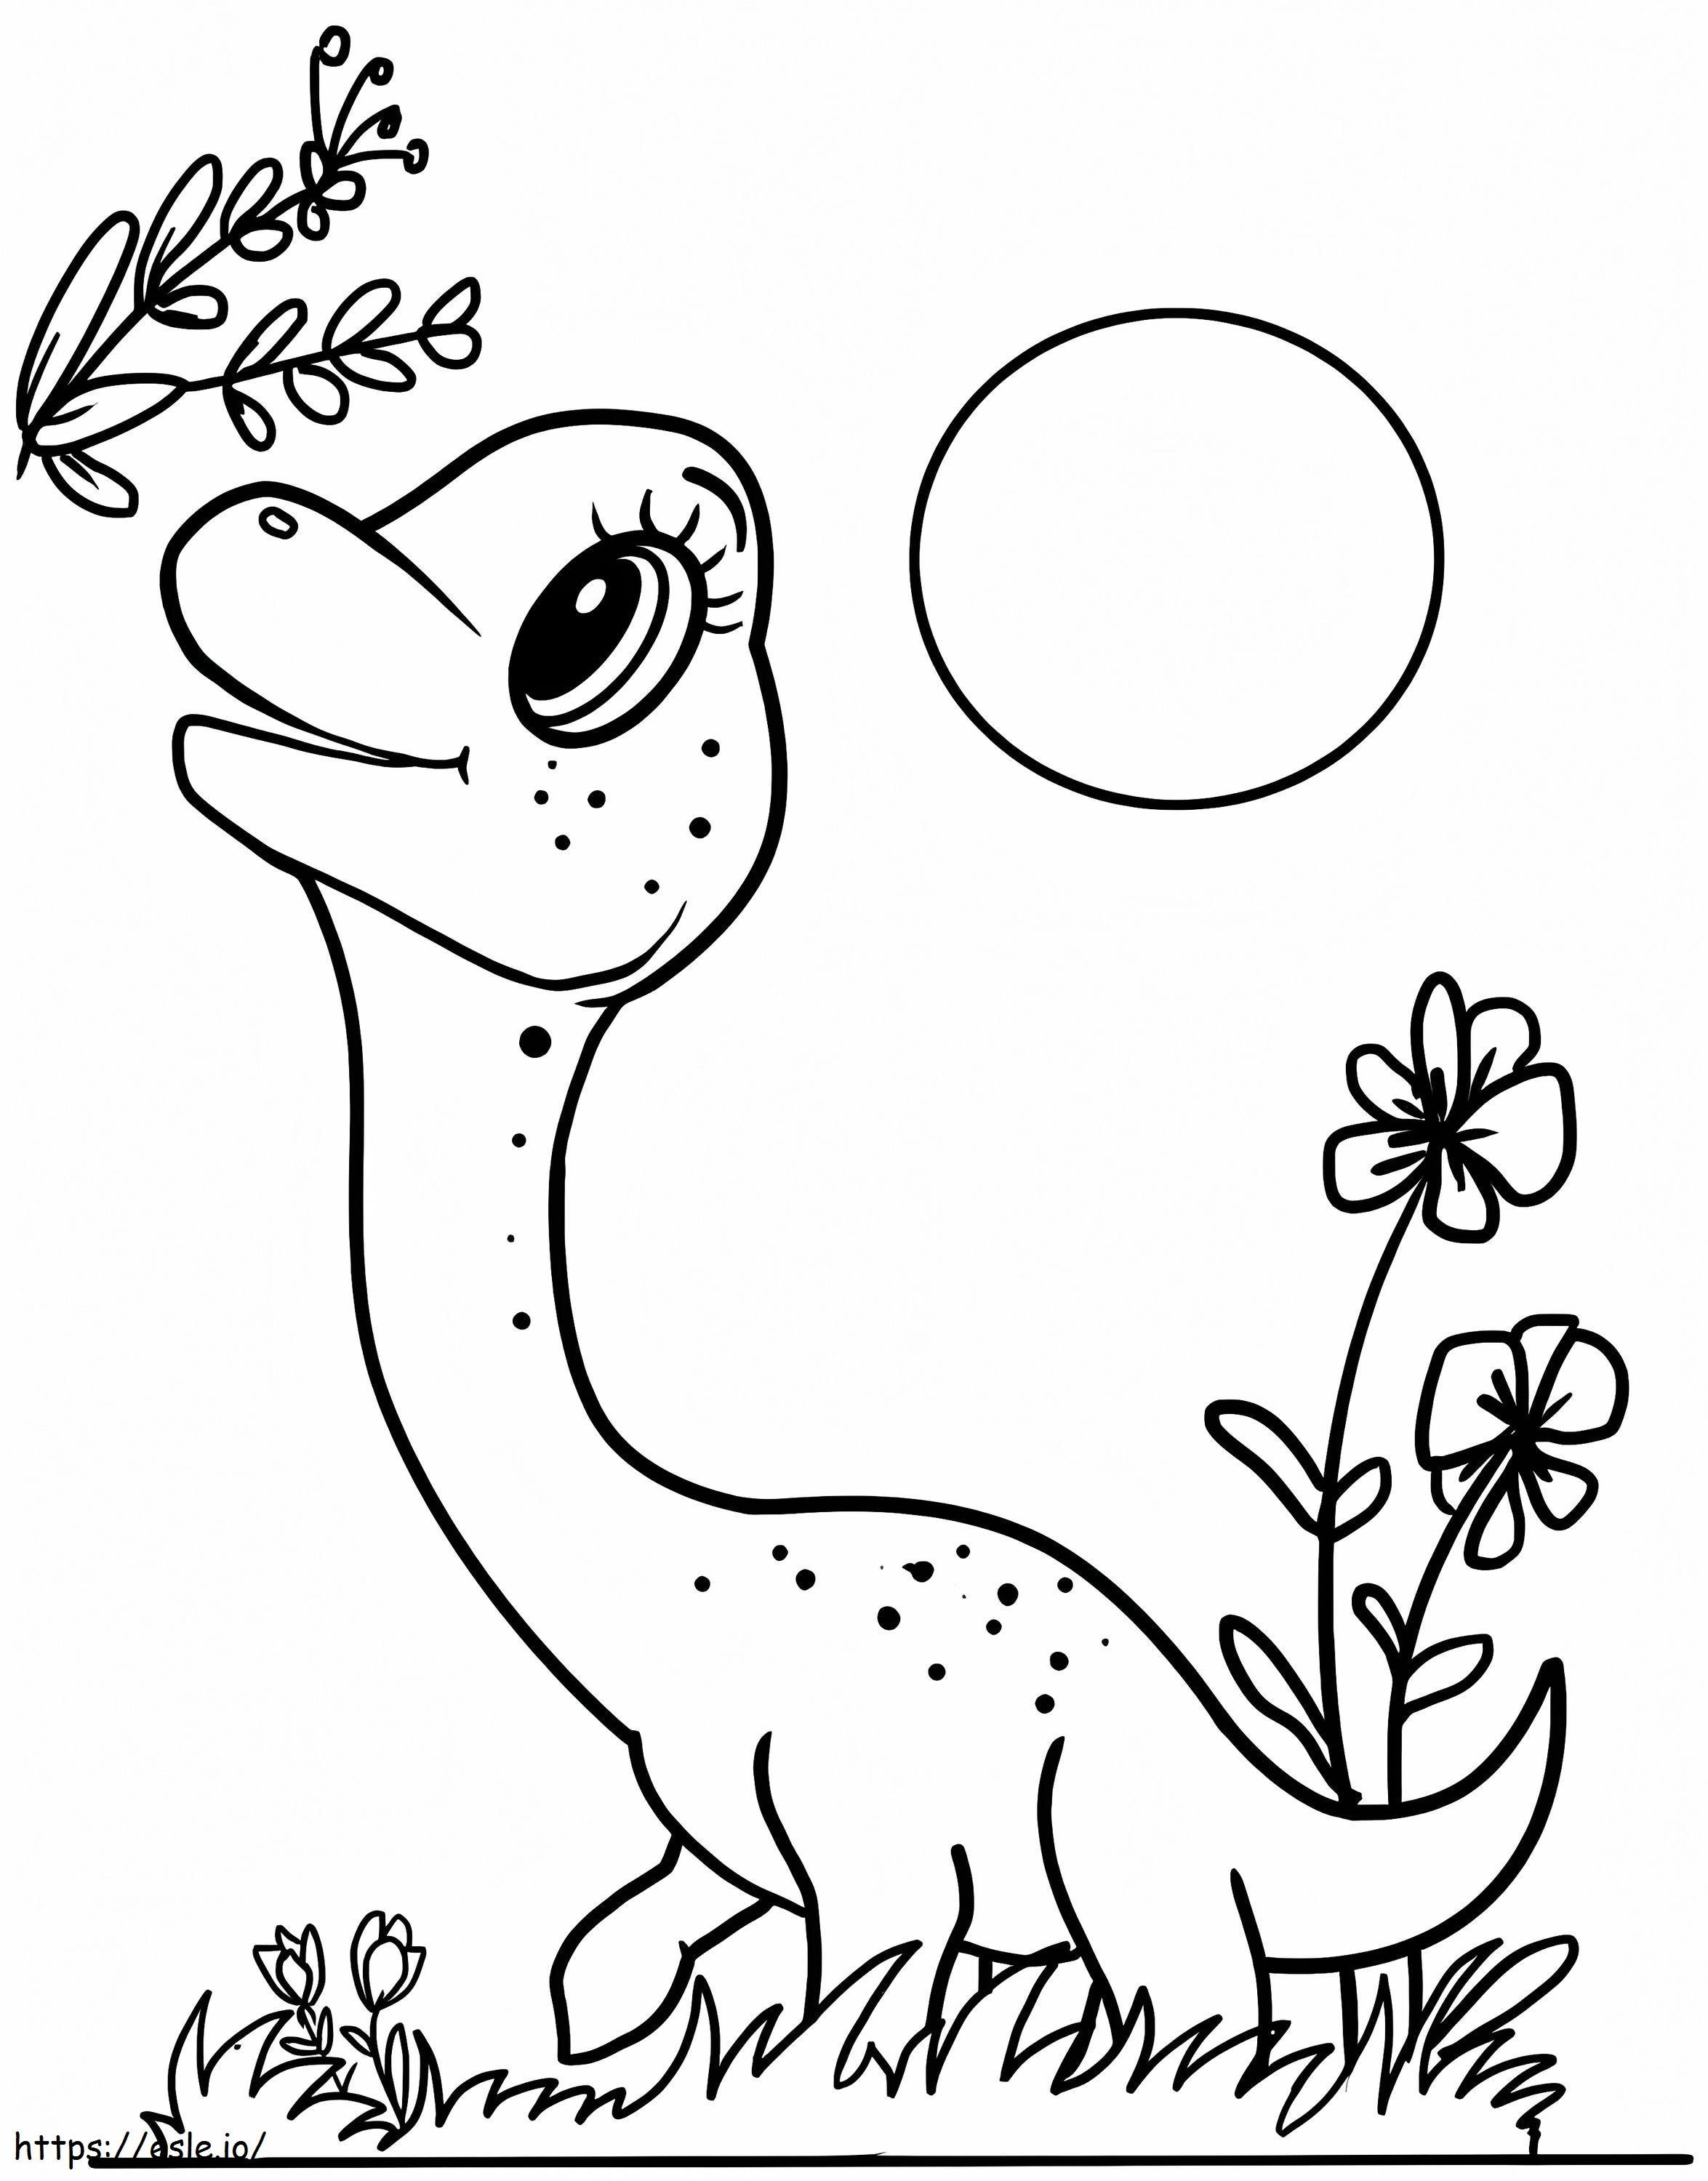 Adorable Brachiosaurus coloring page